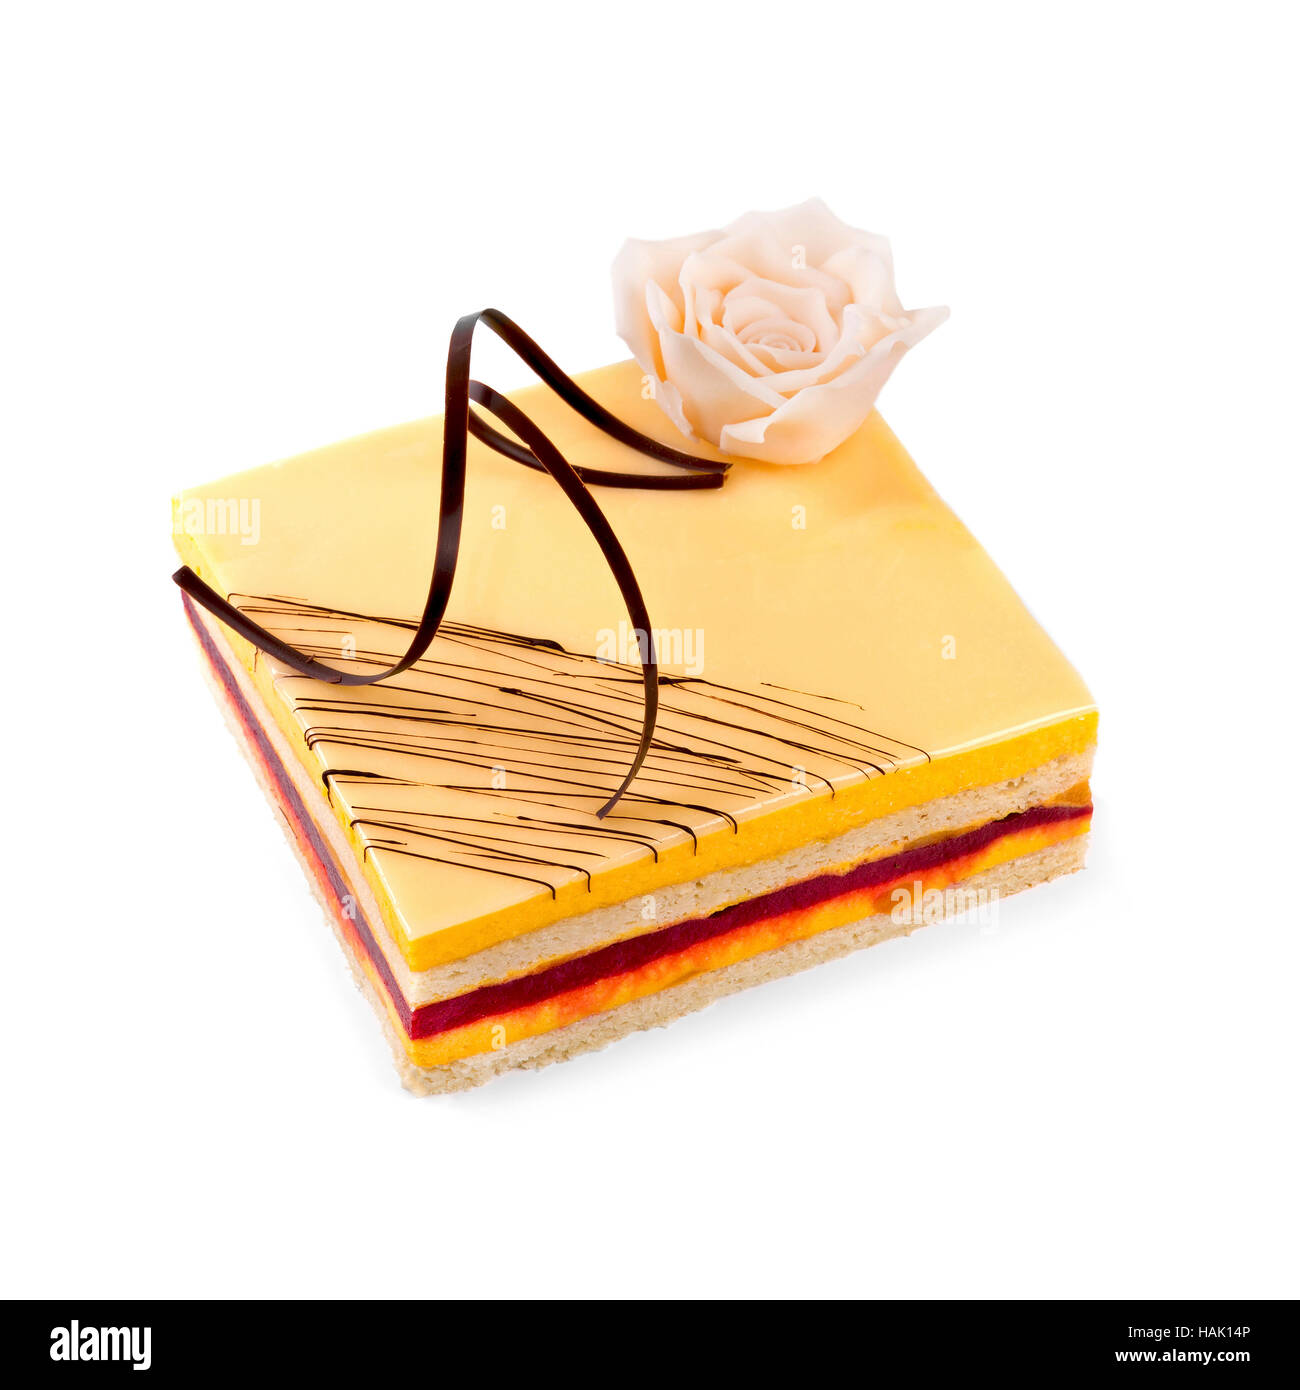 isoliert auf weiss Kuchen mit Marzipan Rosen dekoriert Stockfoto